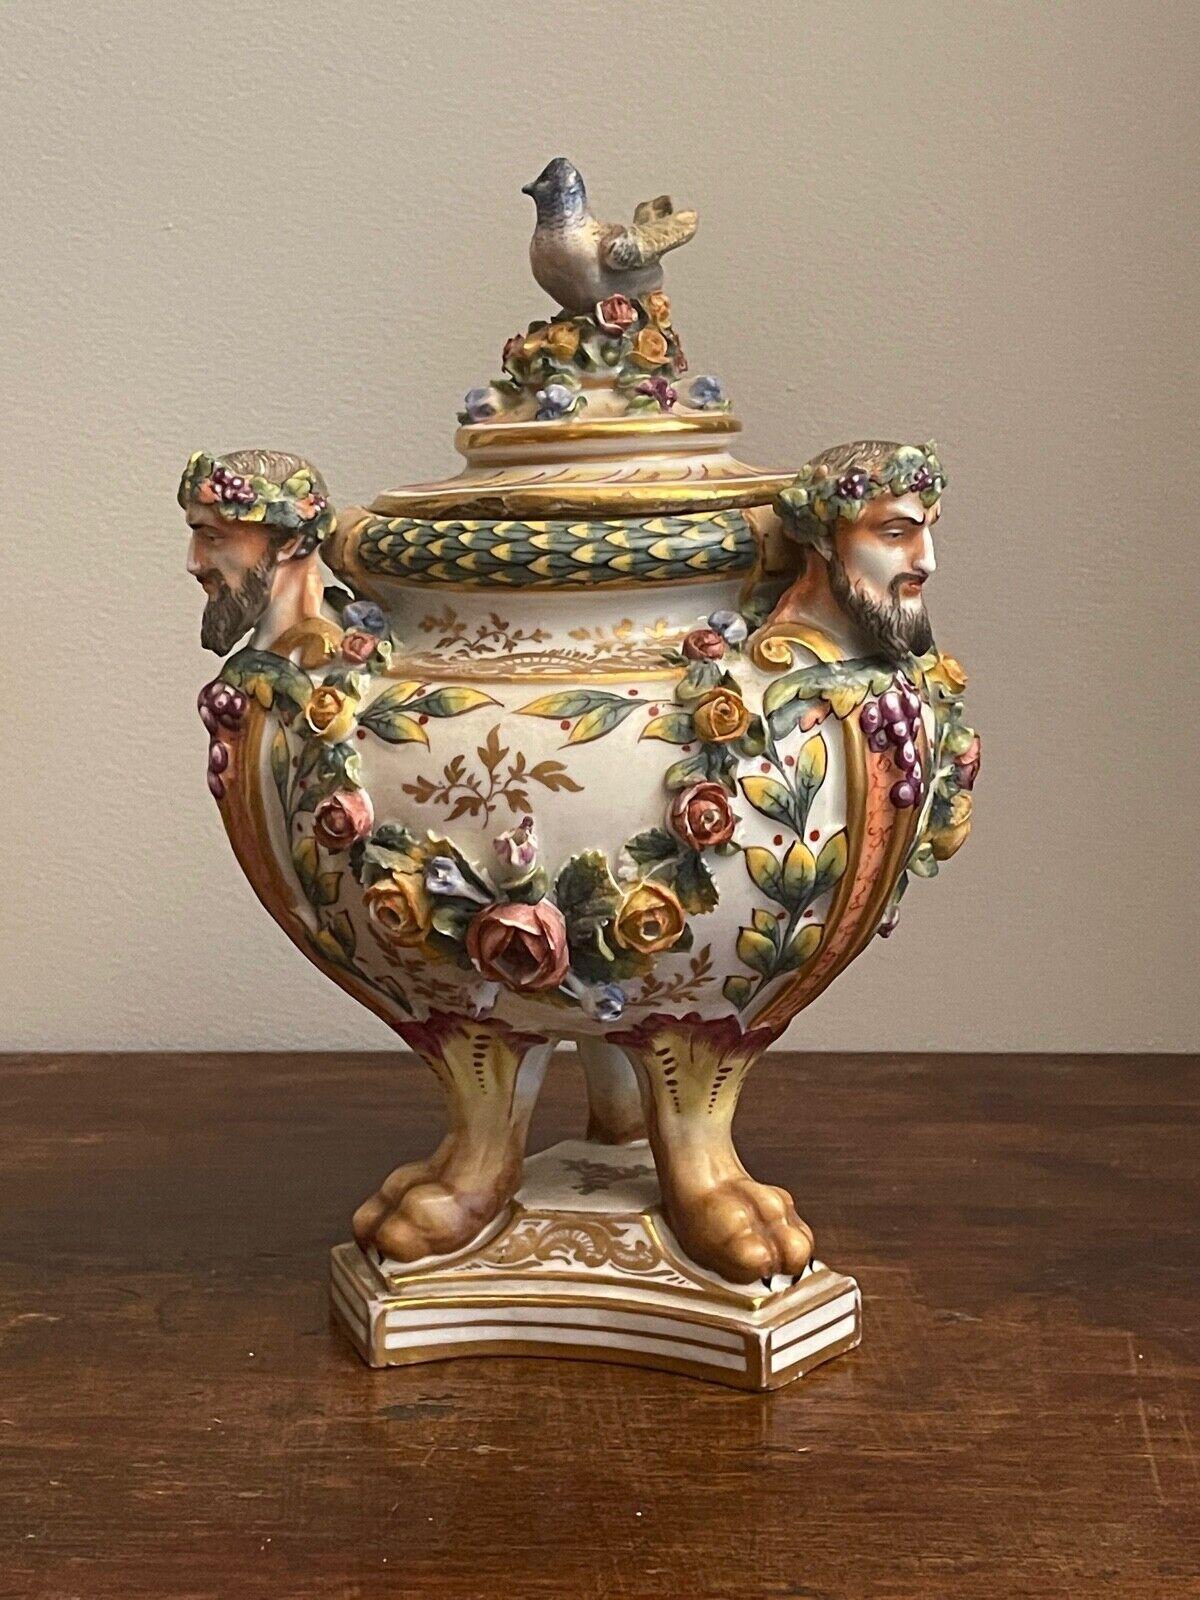 Potiche aus Keramik, 19. Jahrhundert
Elegante Vase aus Keramik mit dreieckigem Sockel, facettiert, reich verziert mit floralen Motiven und der Darstellung von Bacchus, der an den drei Ecken von Trauben gekrönt wird, der Deckel ist mit einem kleinen